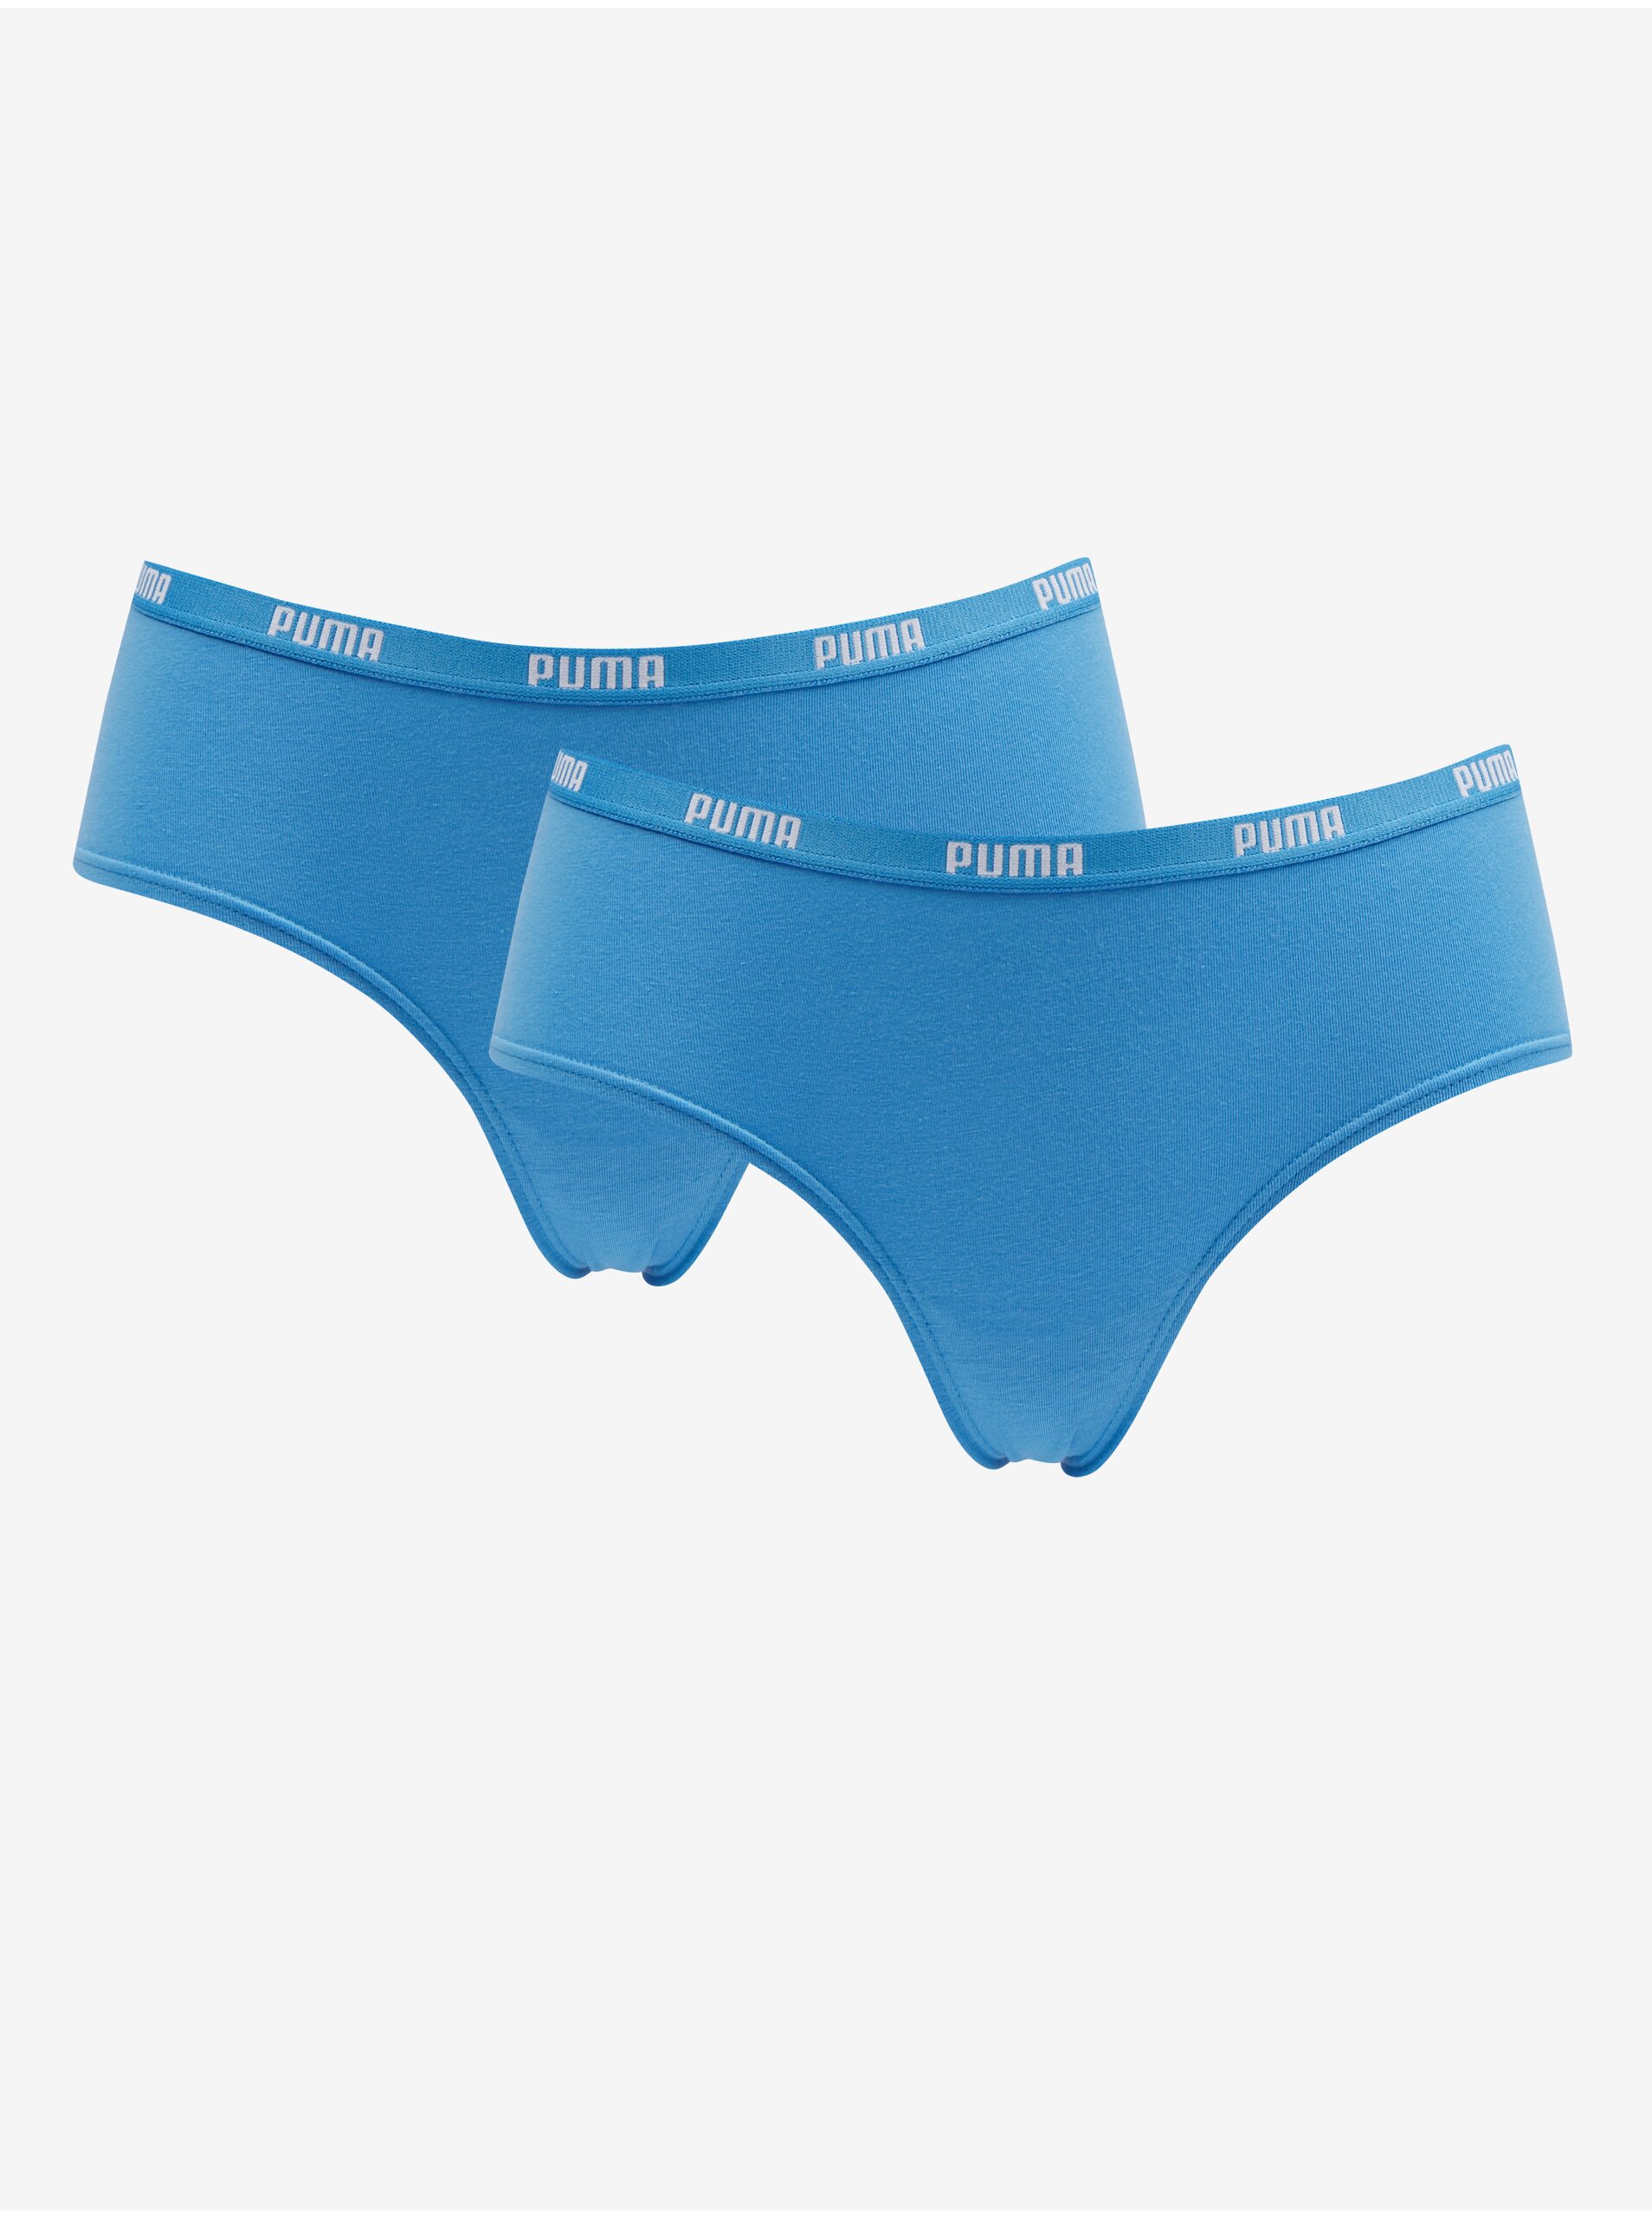 E-shop Sada dvou dámských kalhotek v modré barvě Puma